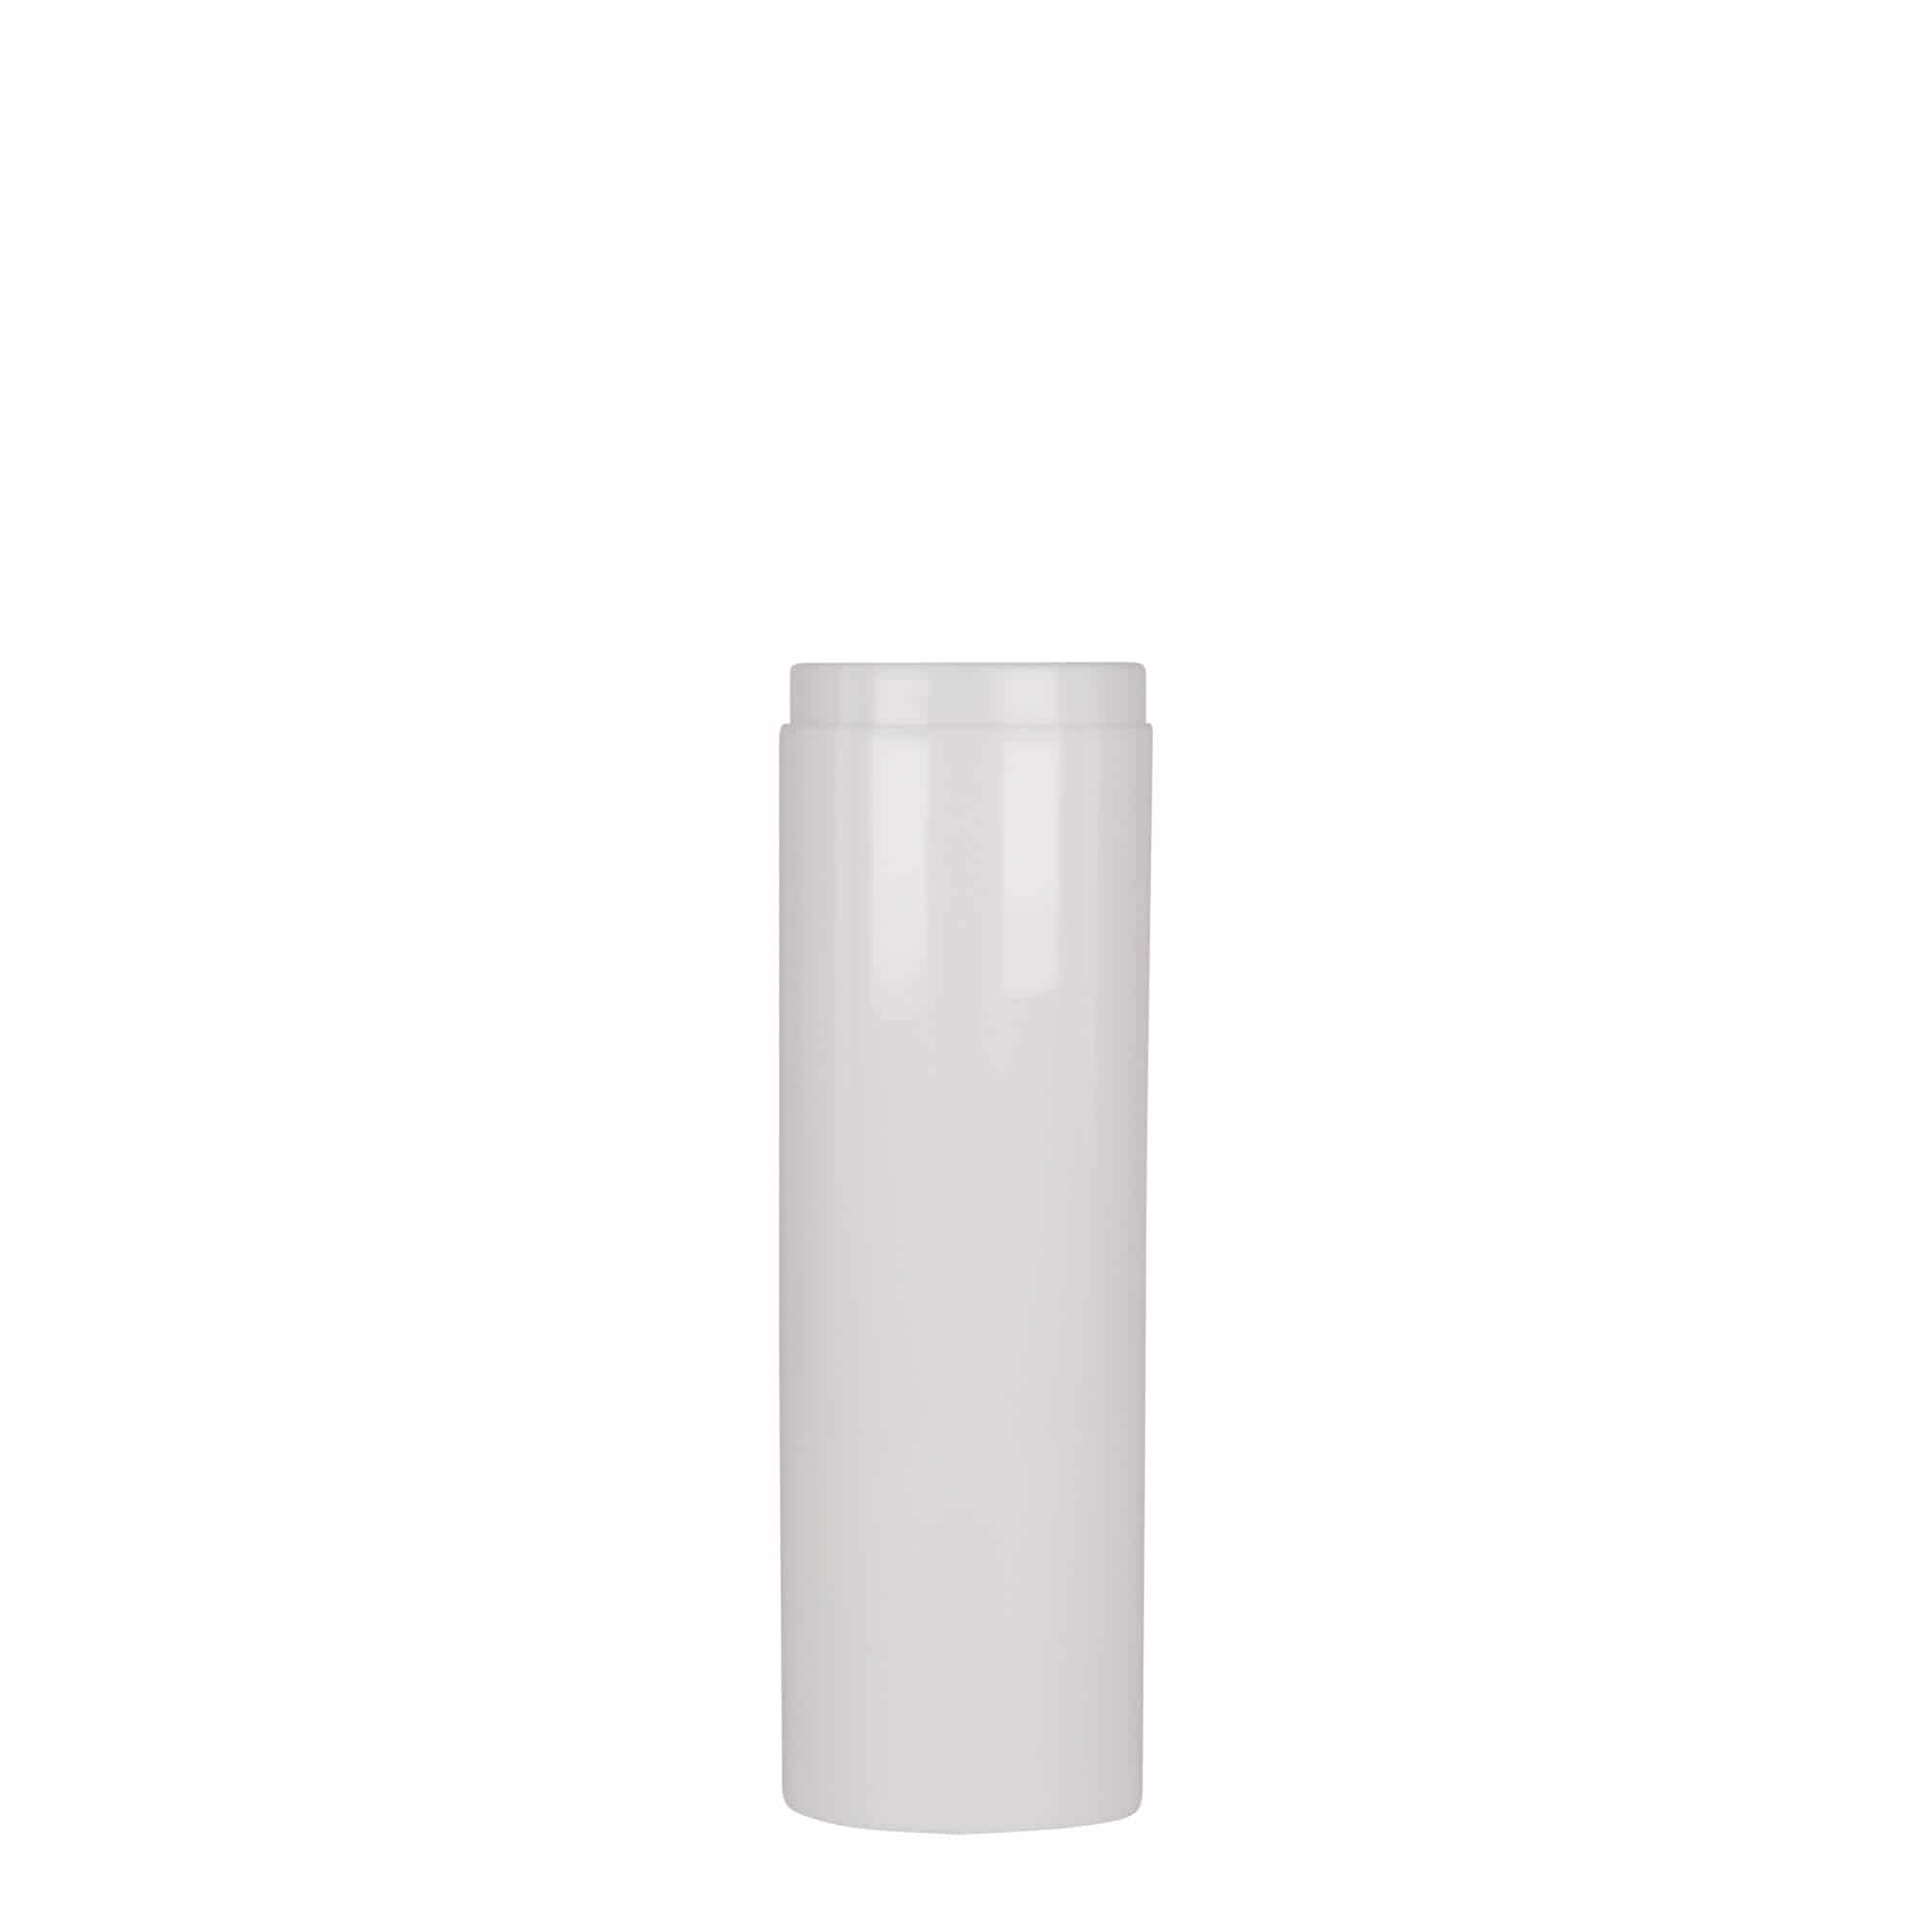 Bezvzduchový dávkovač 75 ml 'Mezzo', plast PP, bílý